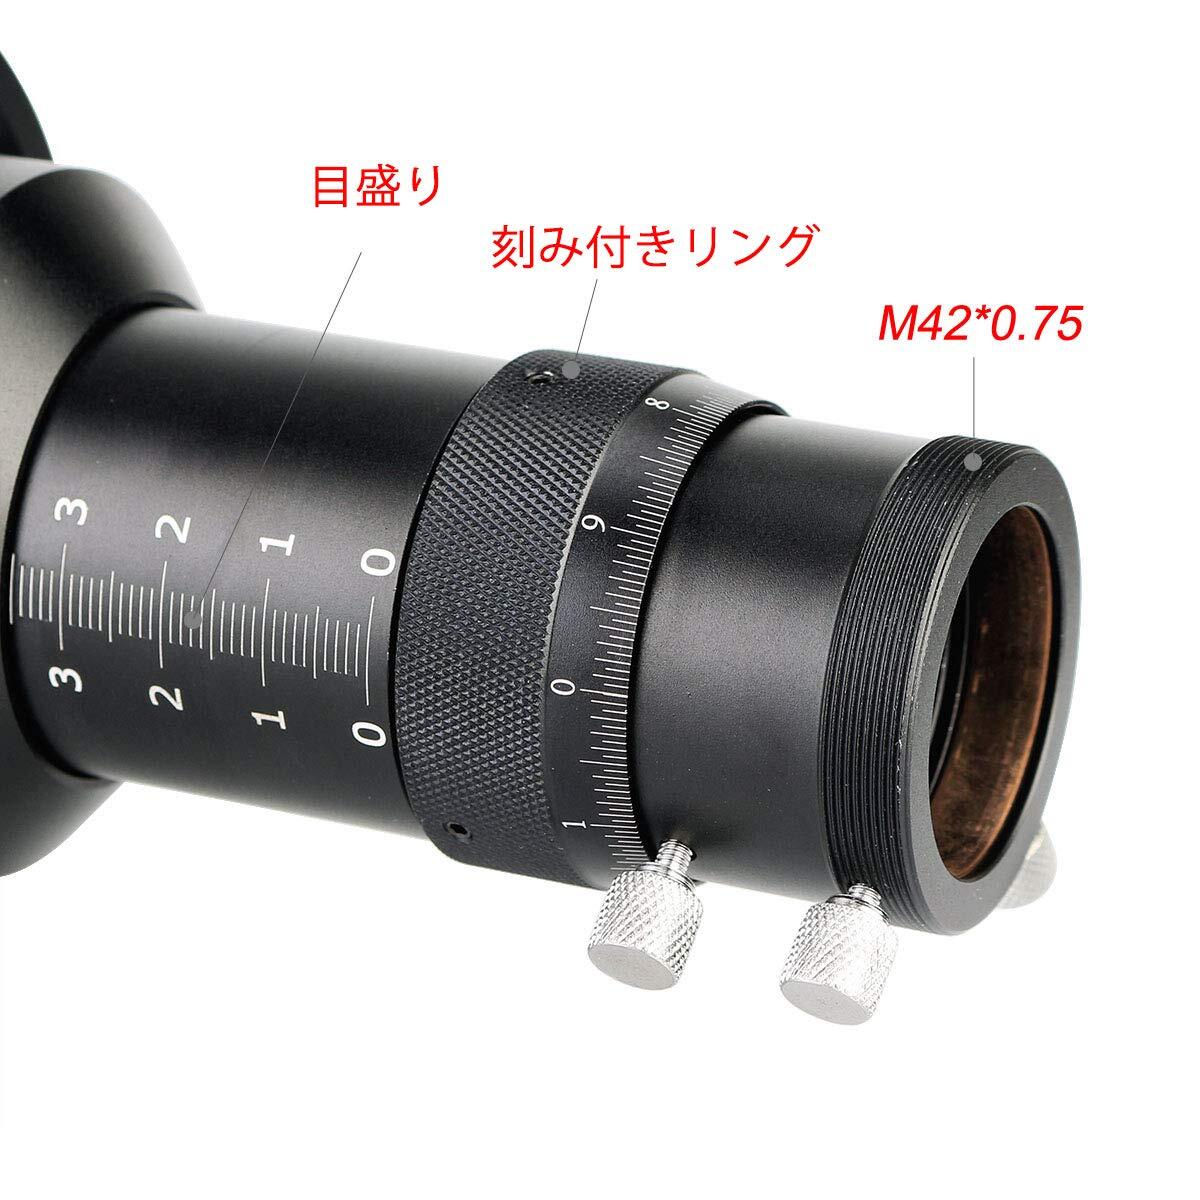 60mmのマルチユースガイドスコープ レンズ直径60ミリメートル ヘリカルフォーカサー付 ファインダースコープ 天体写真を撮影 天体観測 星空_画像4